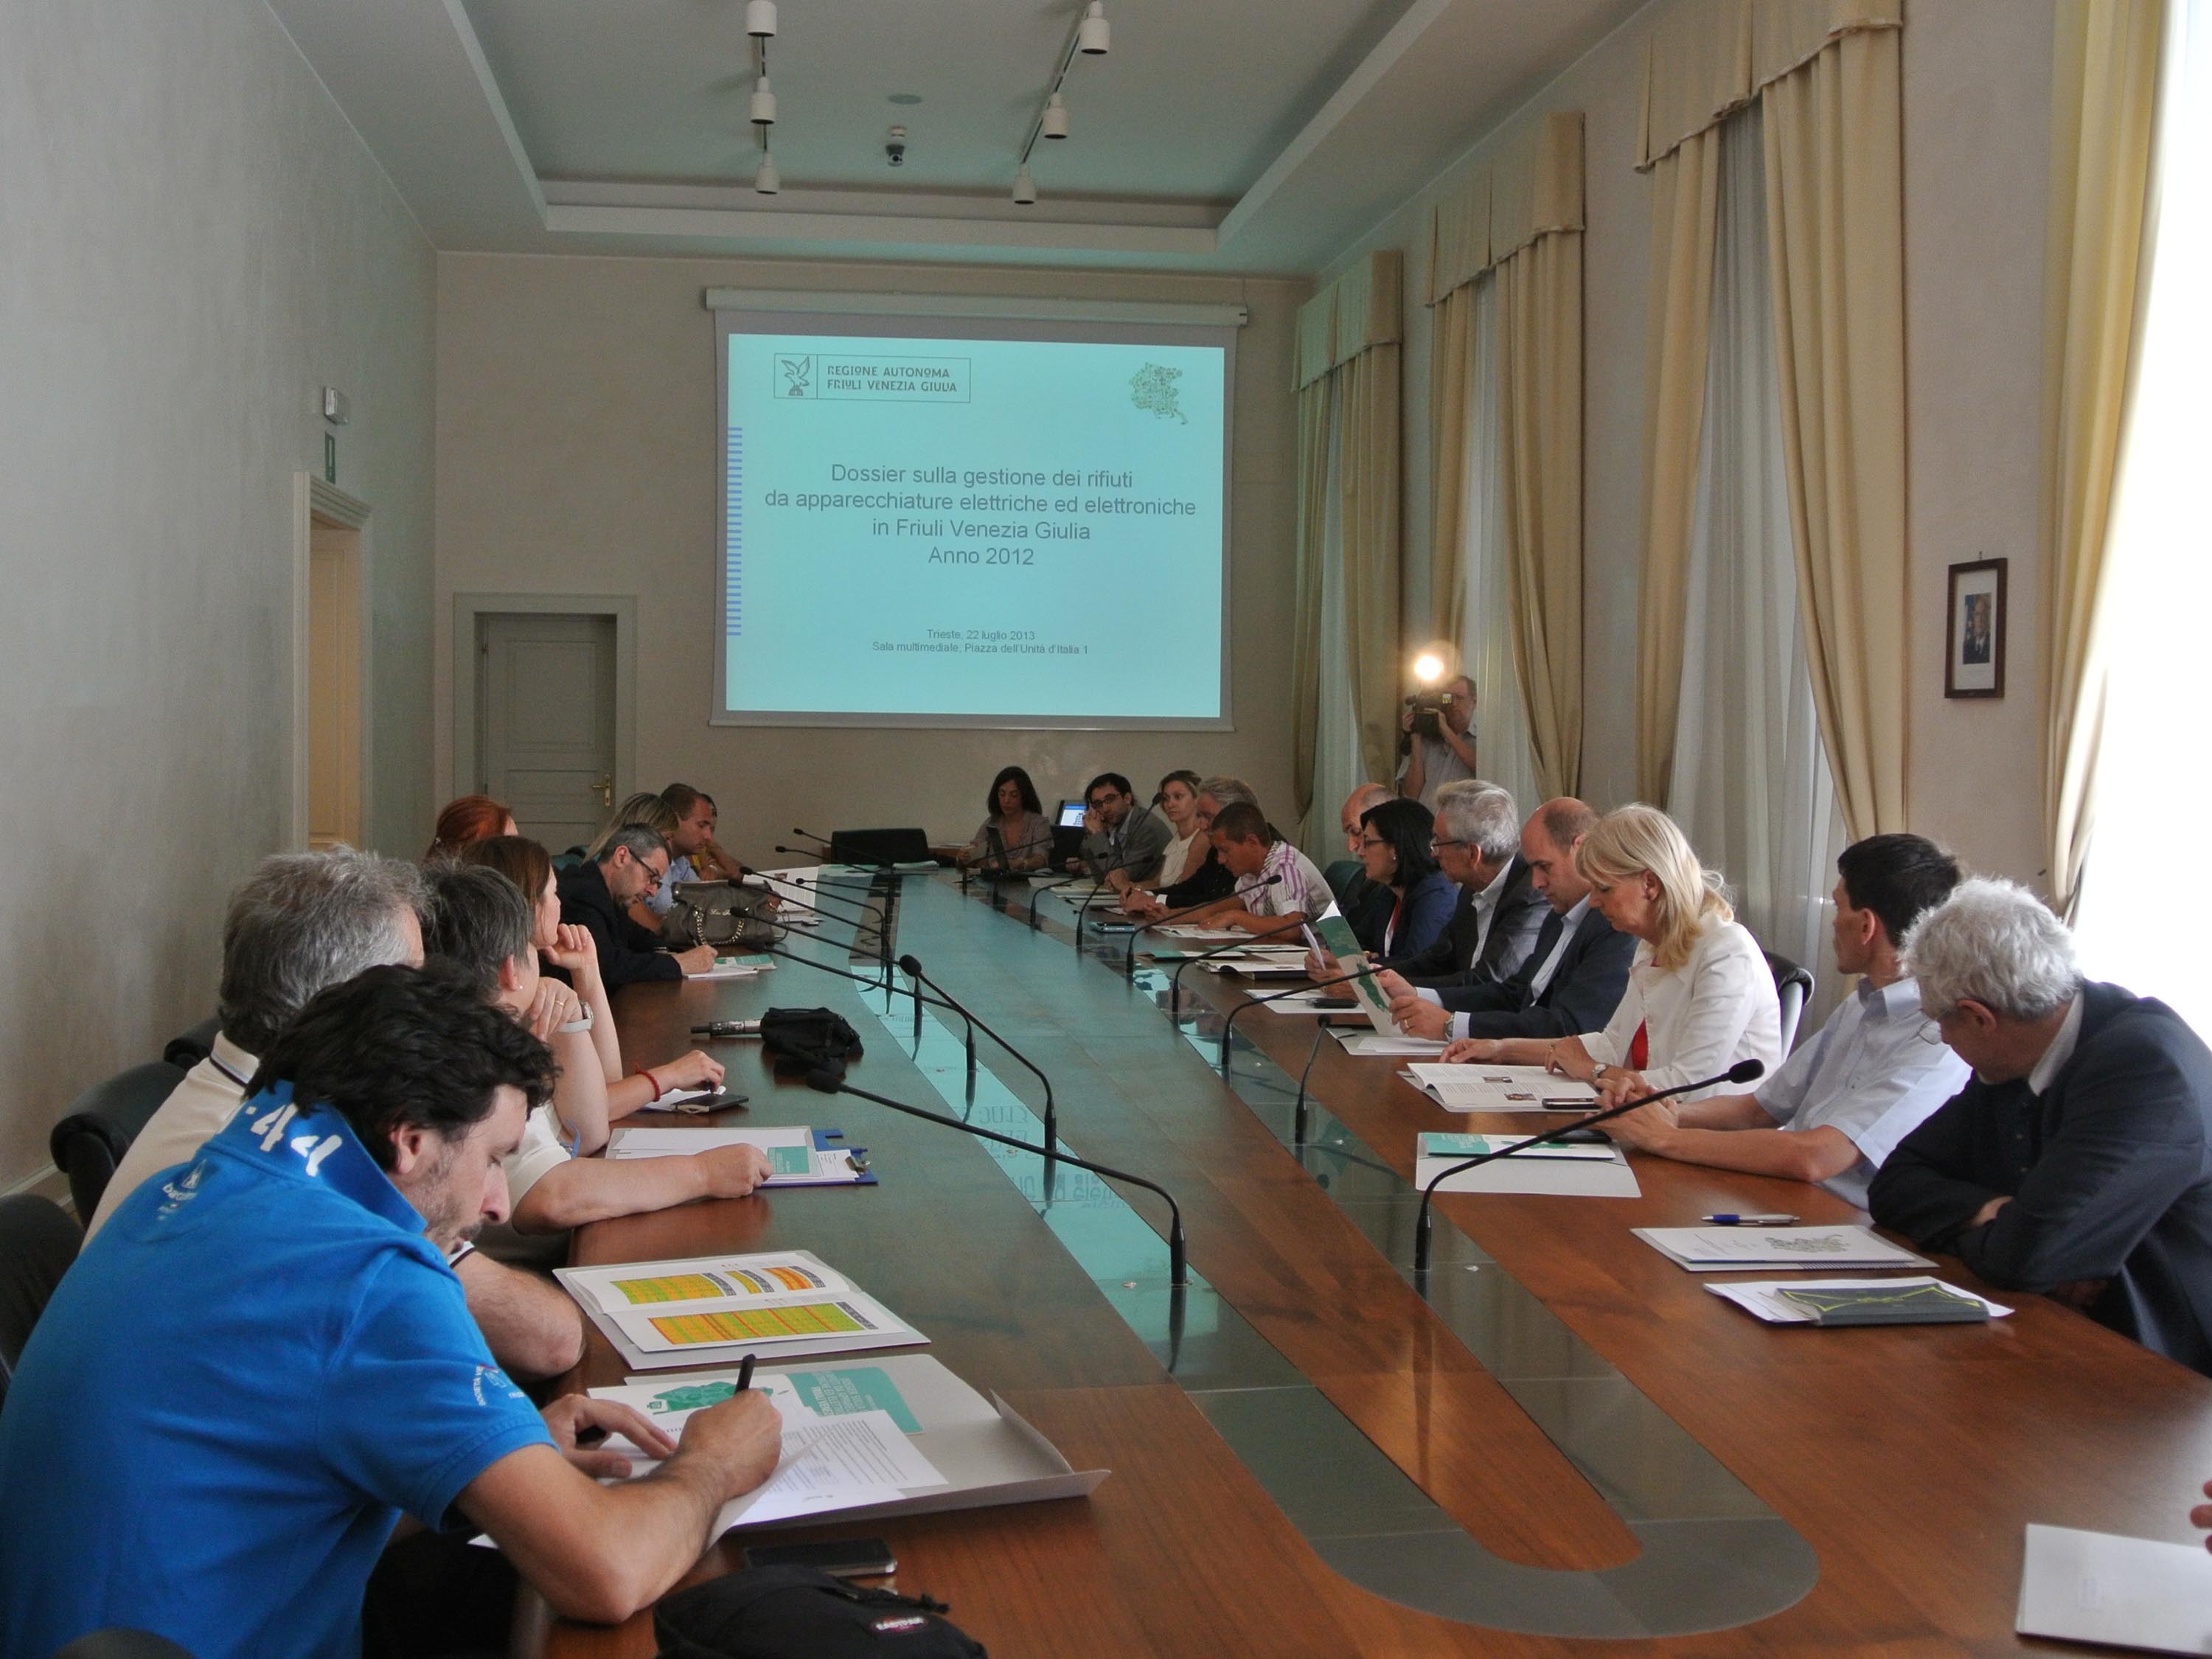 La presentazione del &quot;Dossier sulla gestione dei RAEE-Rifiuti da Apparecchiature Elettriche ed Elettroniche in FVG - Anno 2012&quot;. (Trieste 22/07/13)